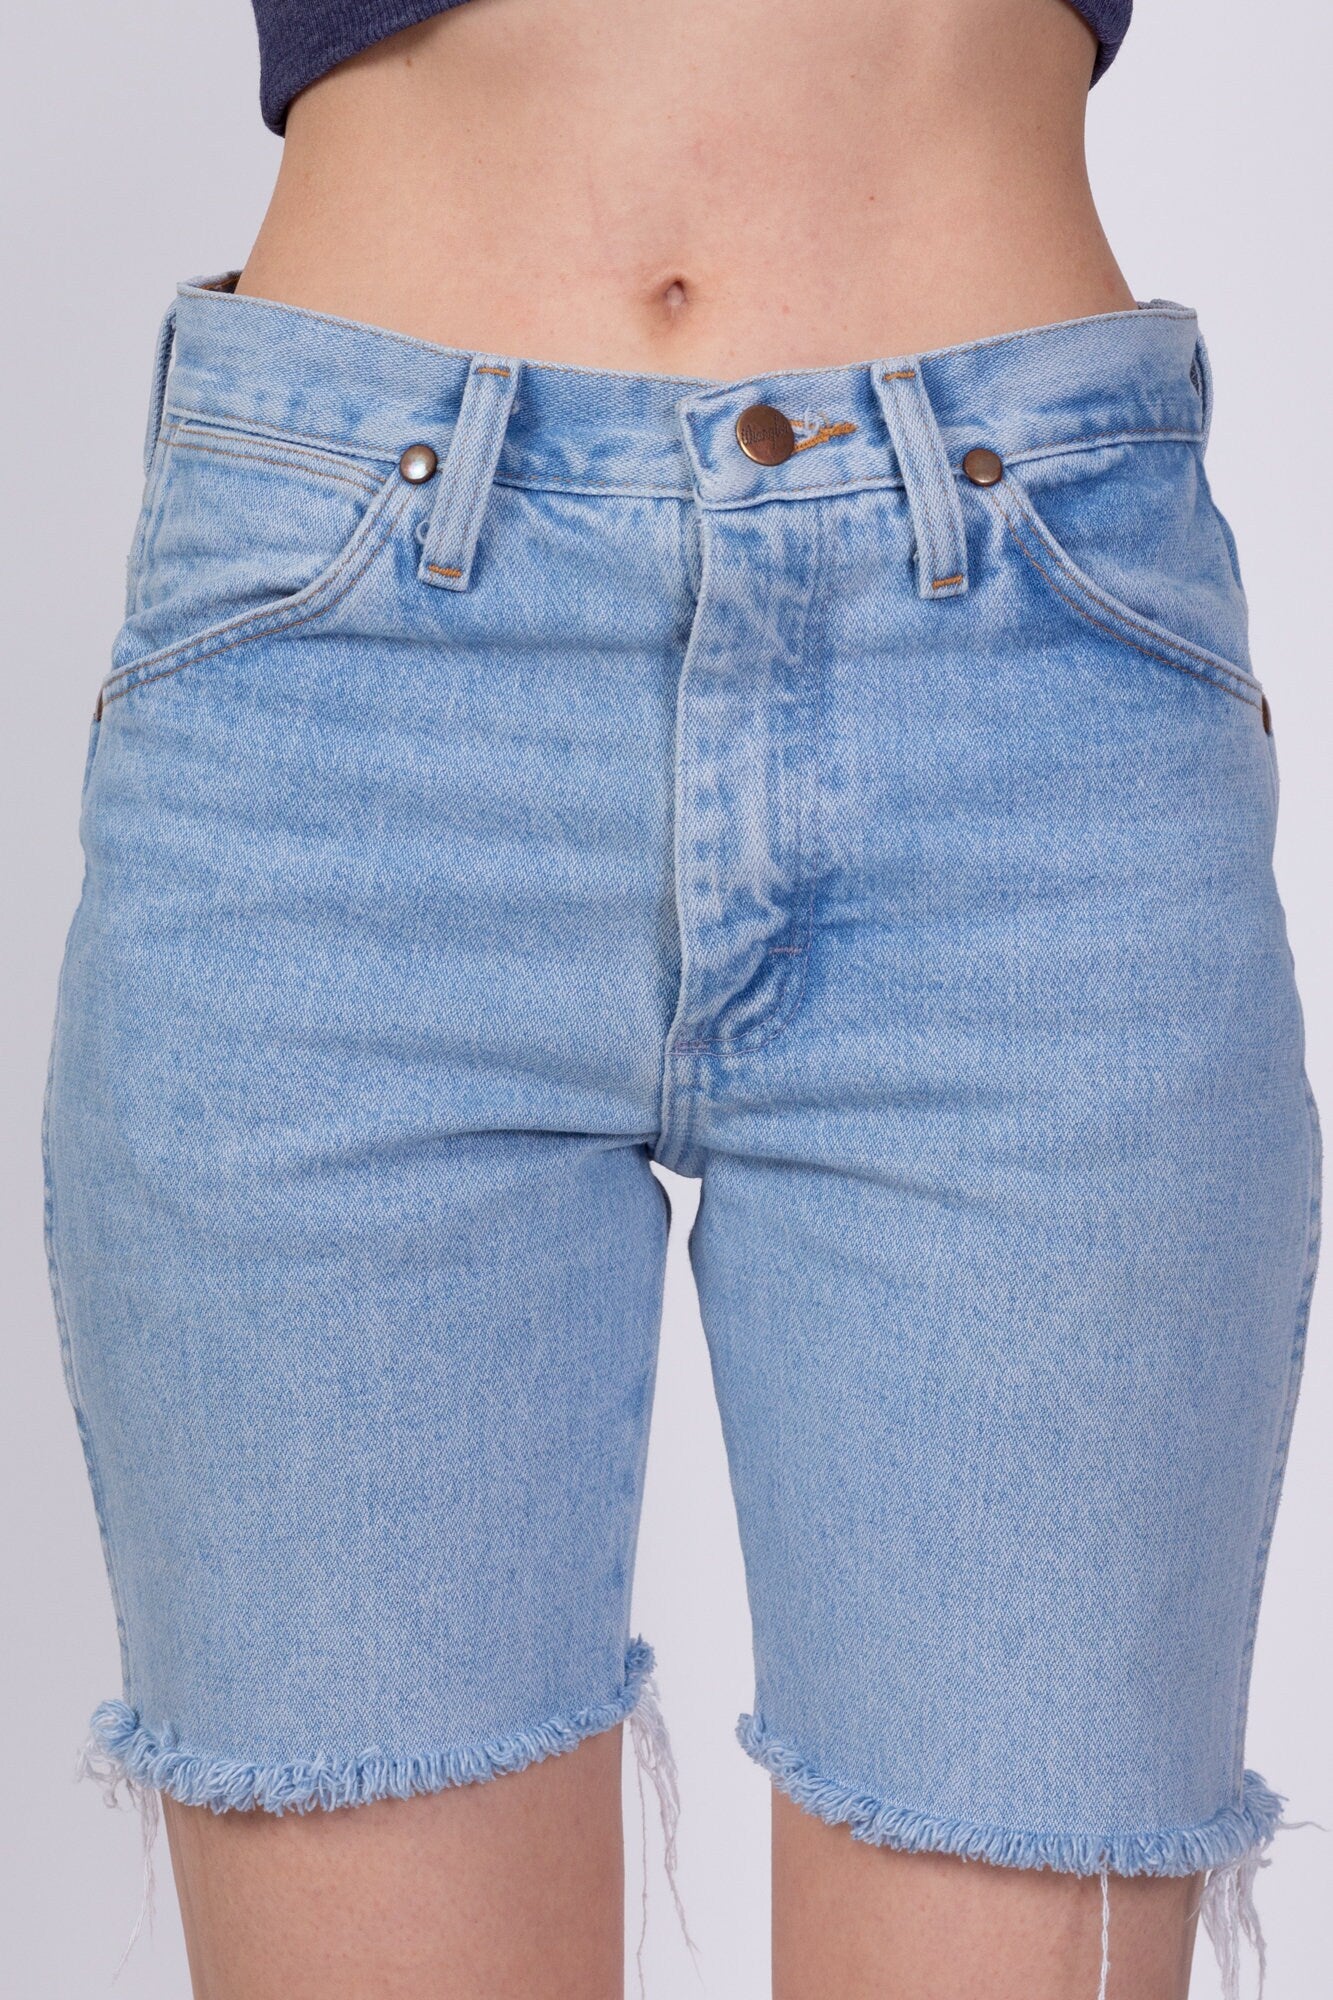 90s Wrangler Cutoff Jean Shorts - Extra Small 